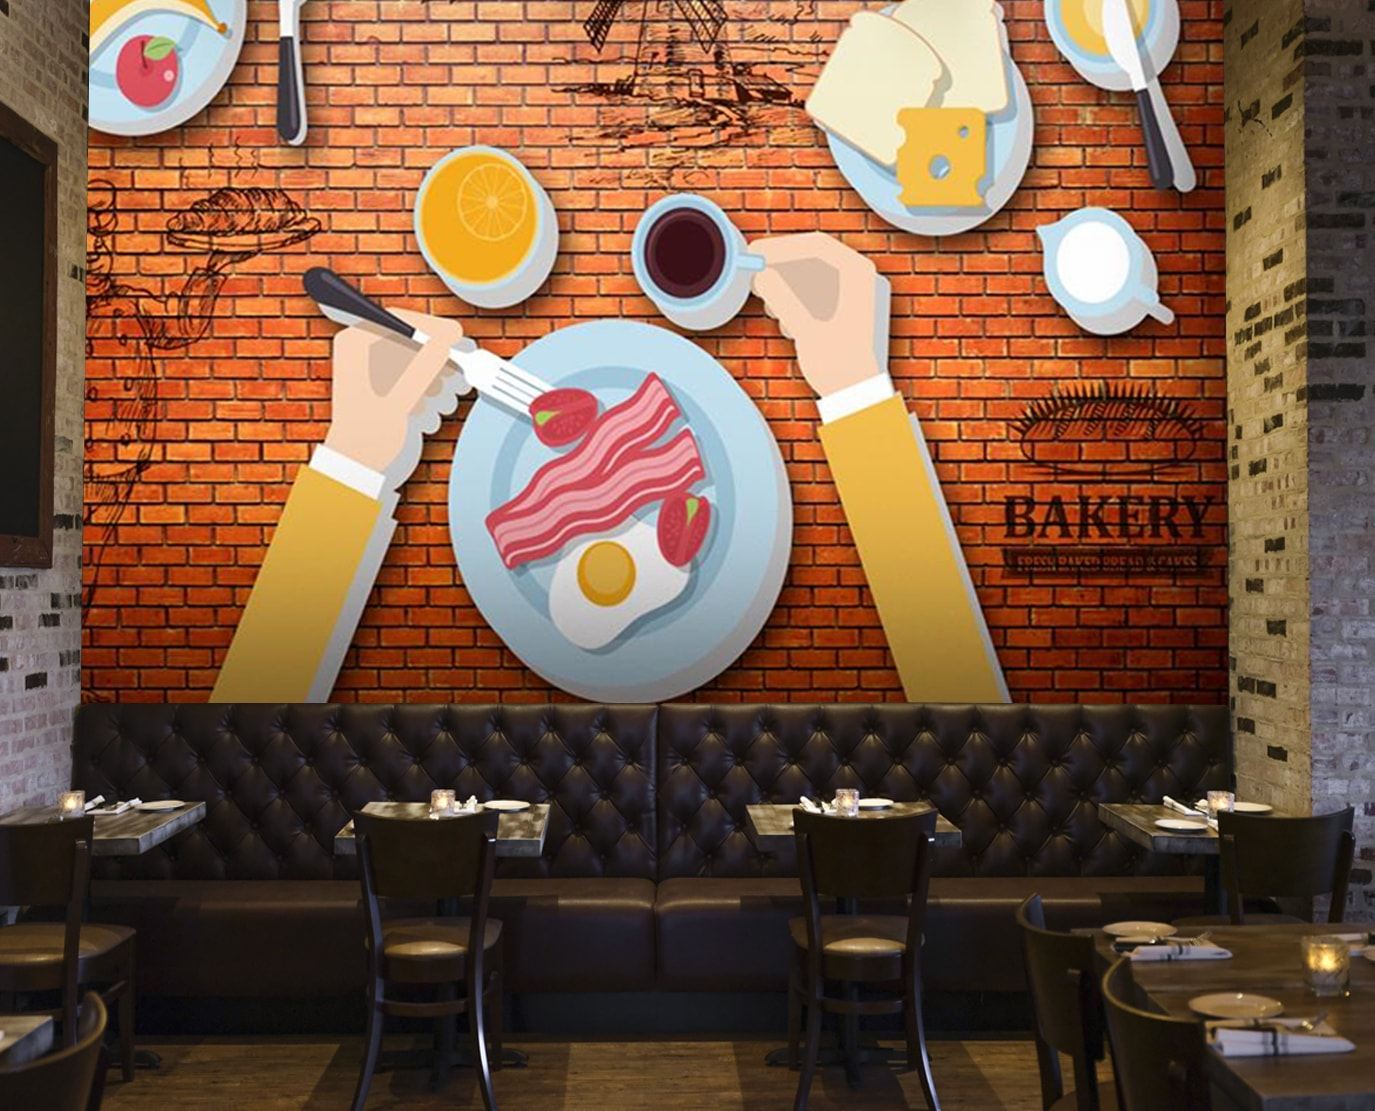 Bakery Cafe Wall Murals - Murals For Restaurant Walls , HD Wallpaper & Backgrounds